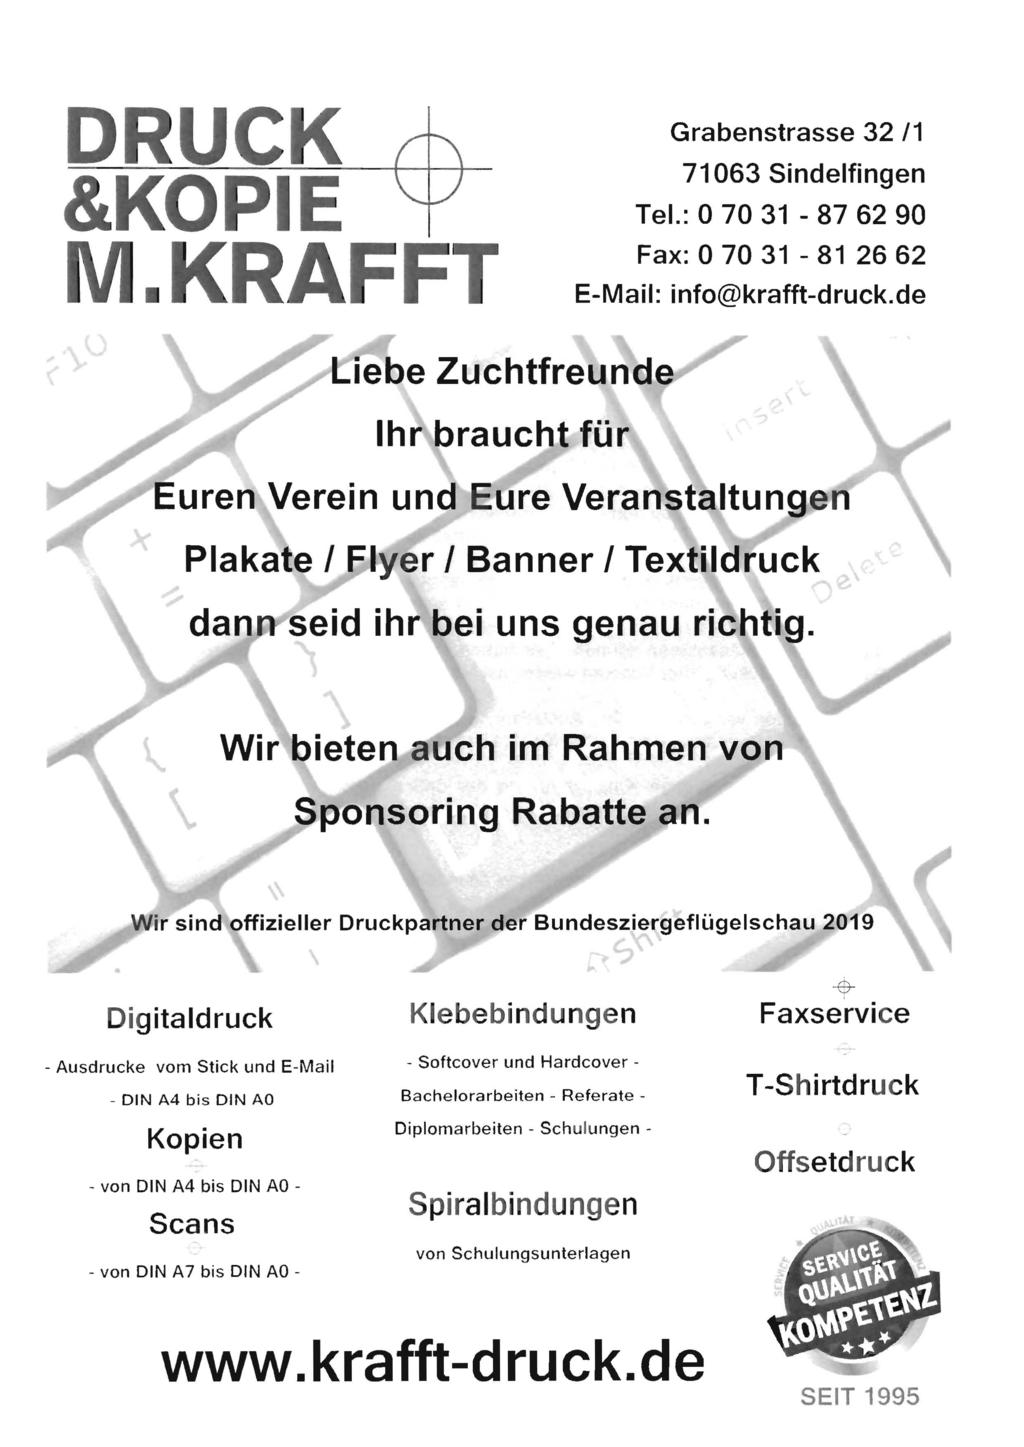 DRUCK &KOPIE M.KRAFFT Grabenstrasse 32 /1 71063 Sindelfingen Tel.: 0 70 31-87 62 90 Fax:07031-812662 E-Mail: info@krafft-druck.